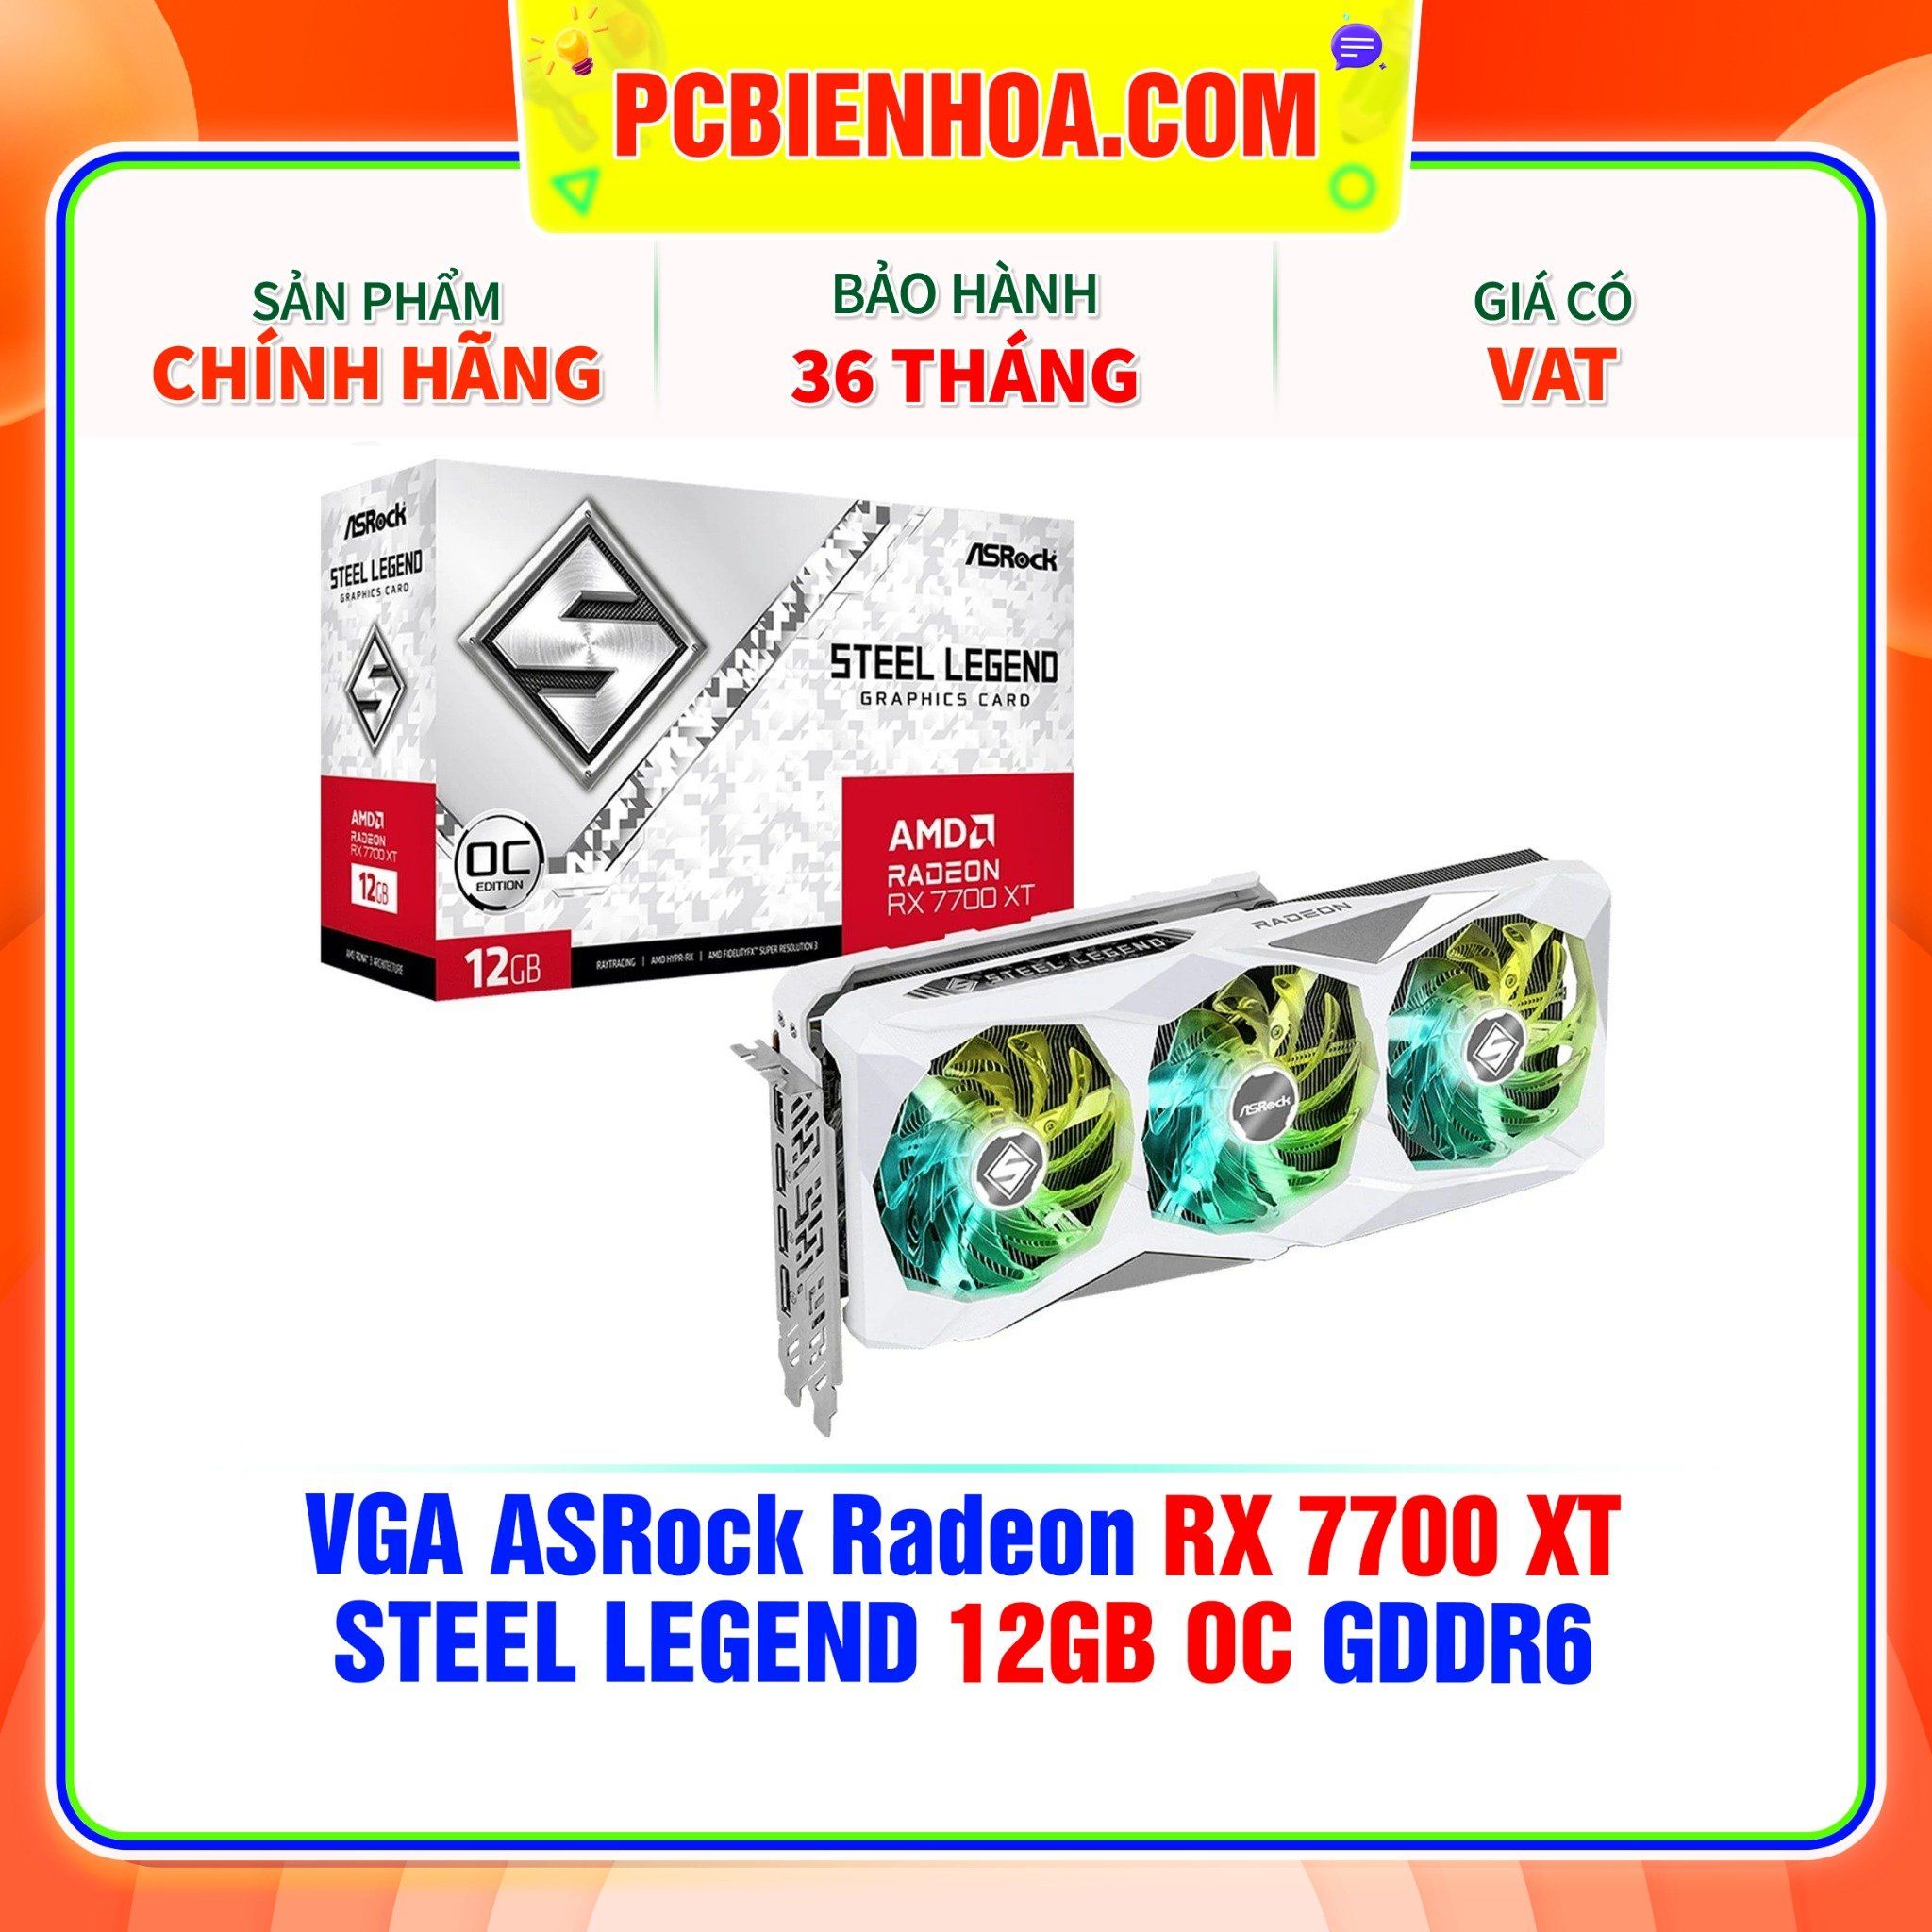  VGA ASRock Radeon RX 7700 XT STEEL LEGEND 12GB OC GDDR6 ( RX7700XT SL 12GO ) 